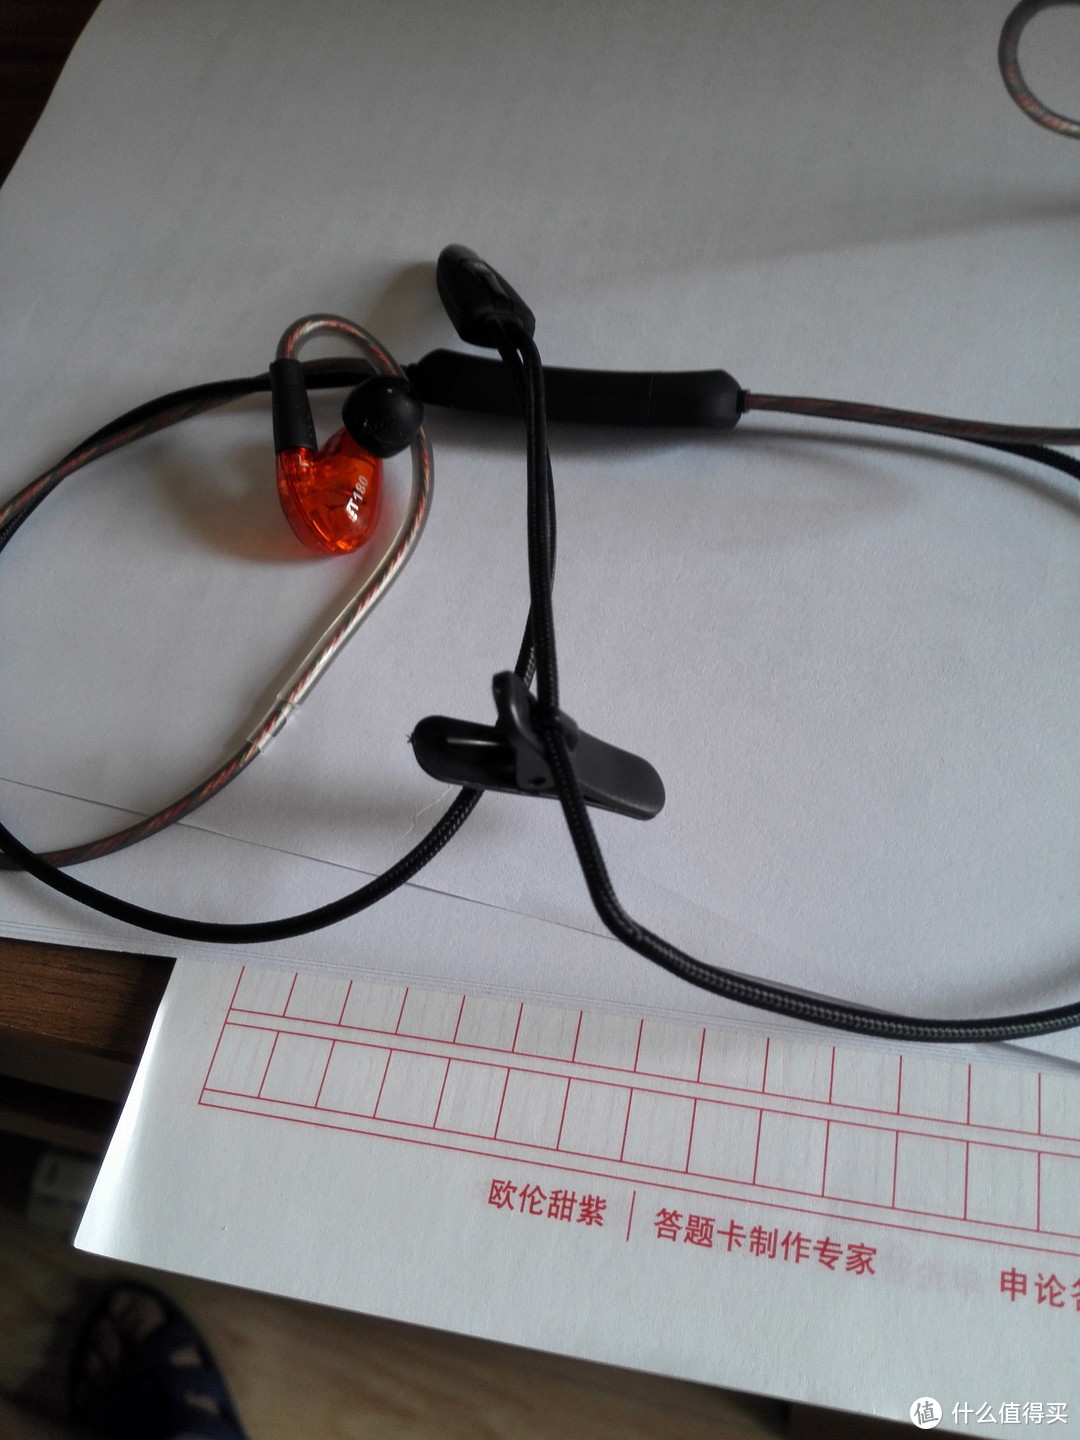 不专业的动铁体验-测评人生中的第一款动铁耳机(傲胜可换线蓝牙监听耳机)